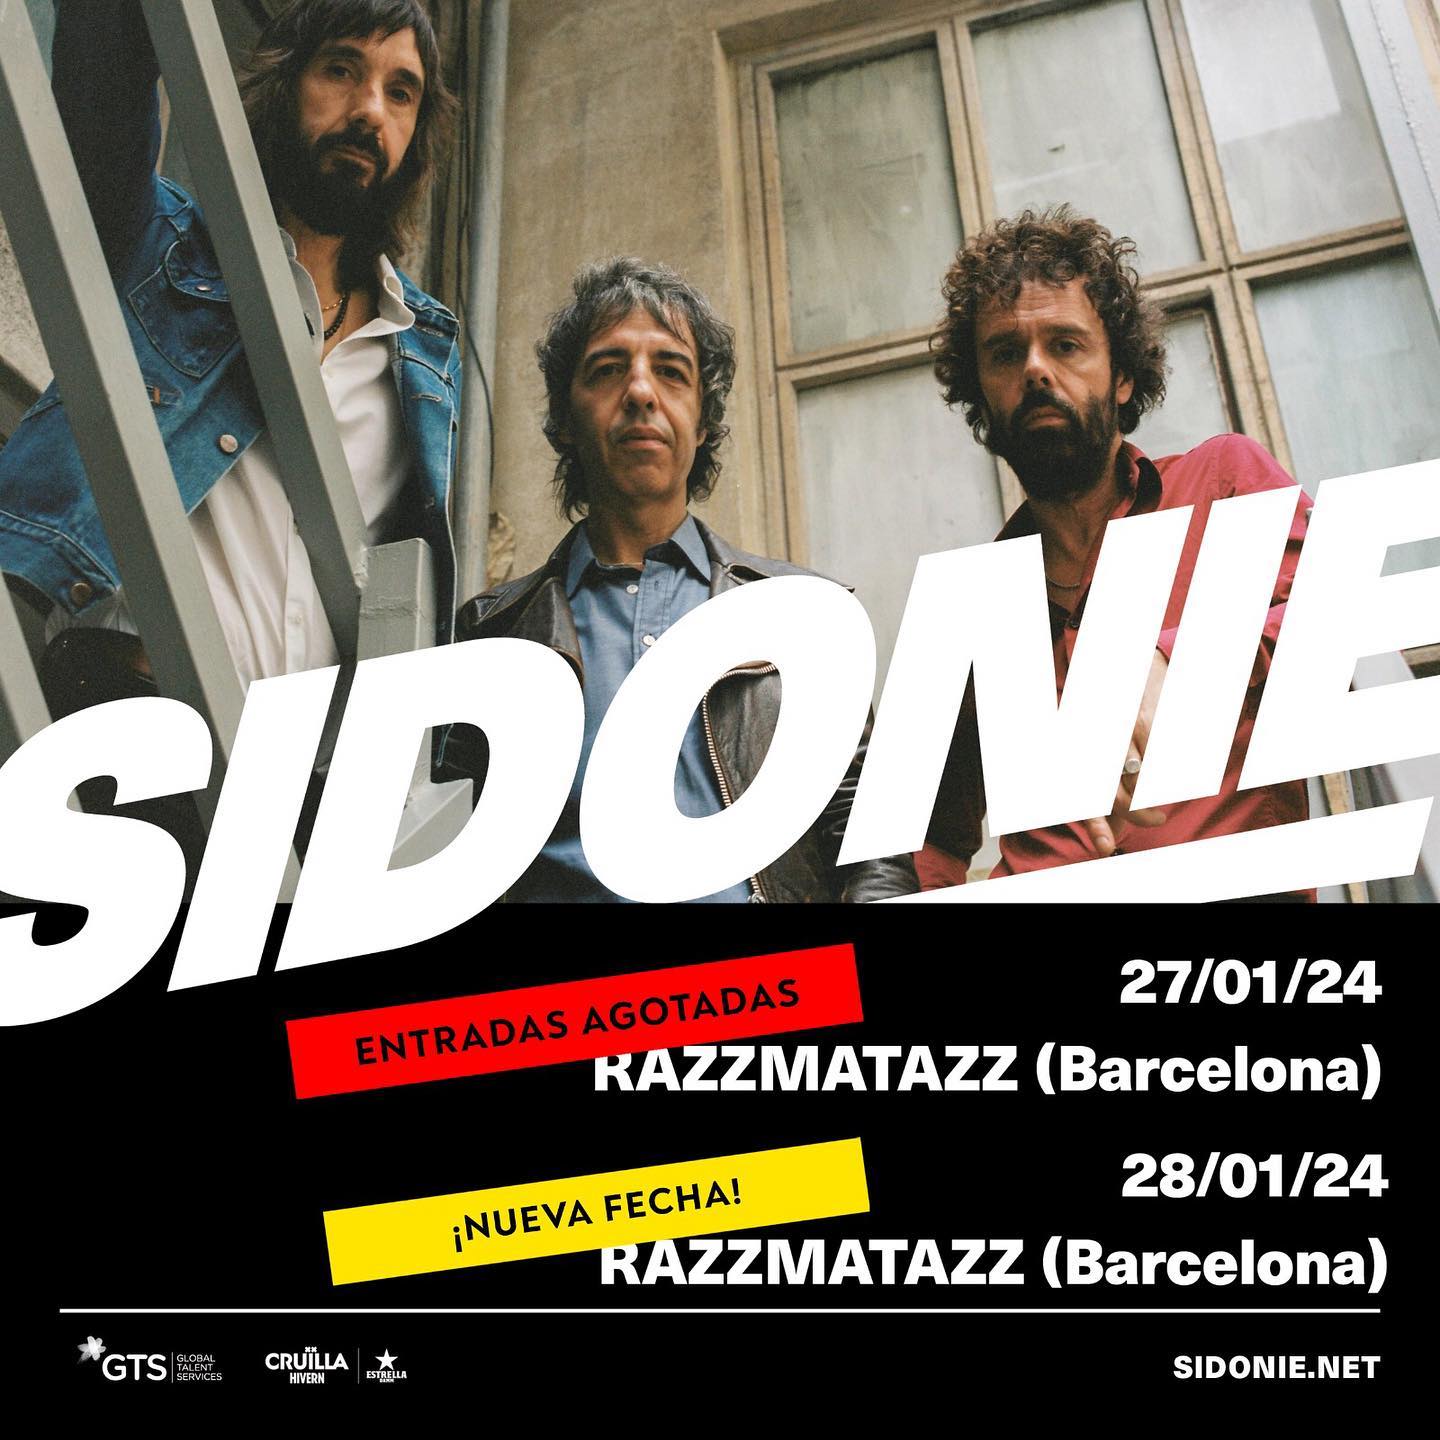 Família i amics de Barcelona, anem amb una 2a data al @razzmatazzclubs, cosa ...